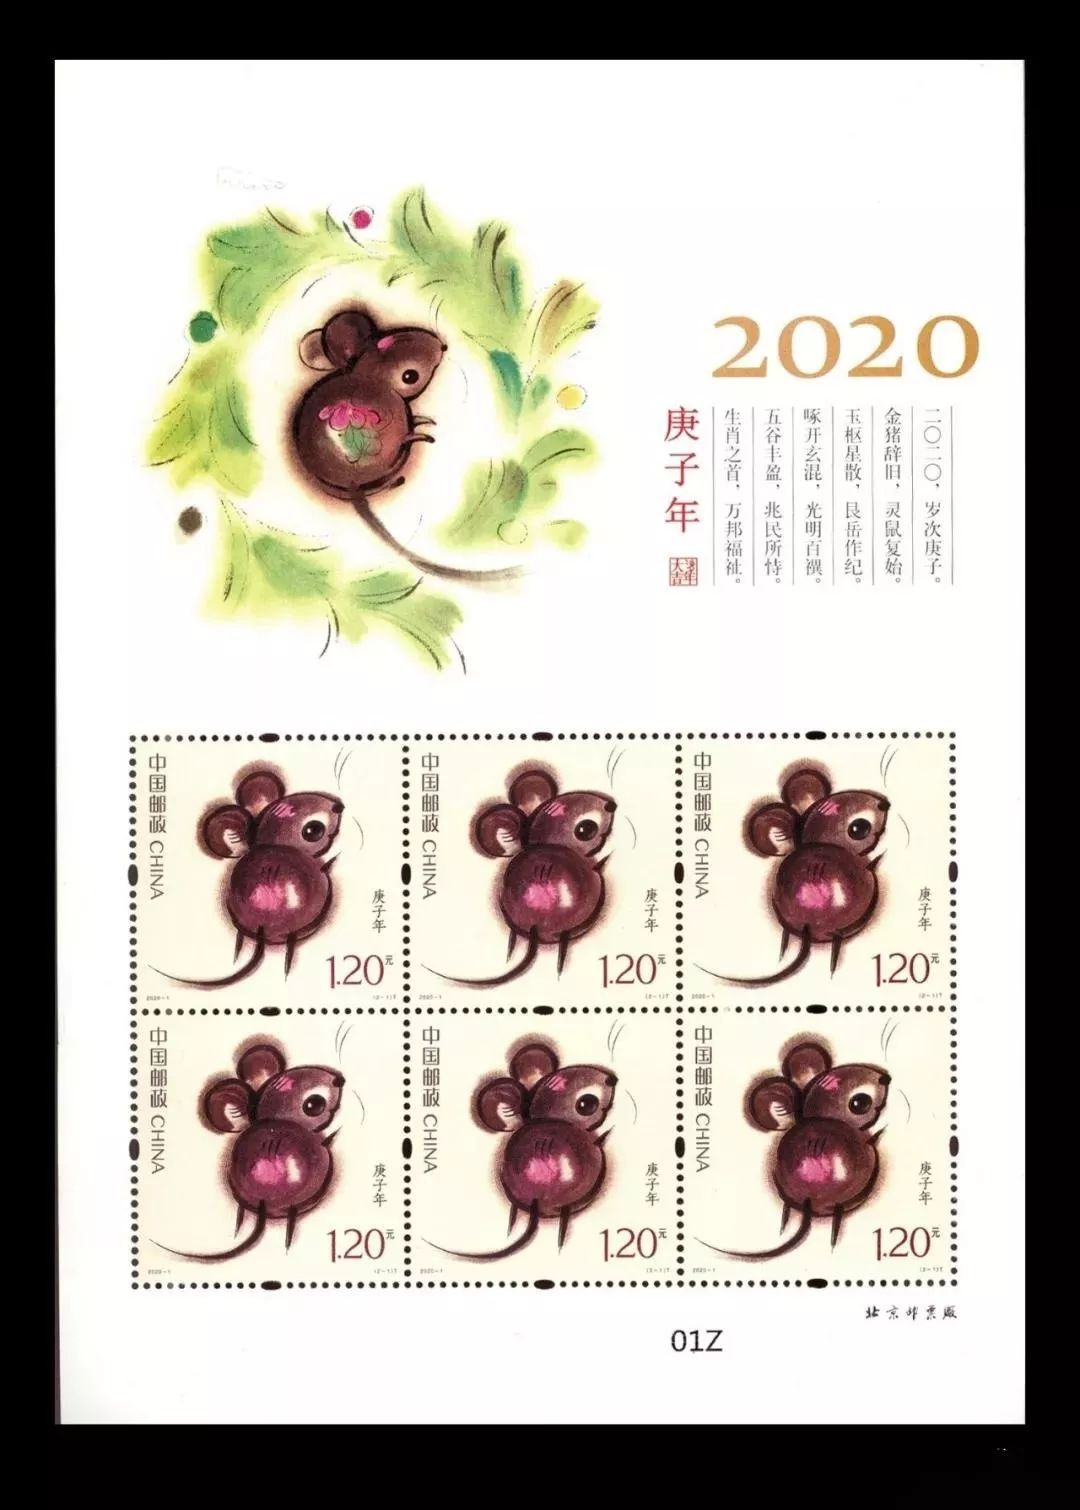 【底价抢藏】2020鼠年生肖邮票 第四轮生肖邮票 庚子年鼠票大版票